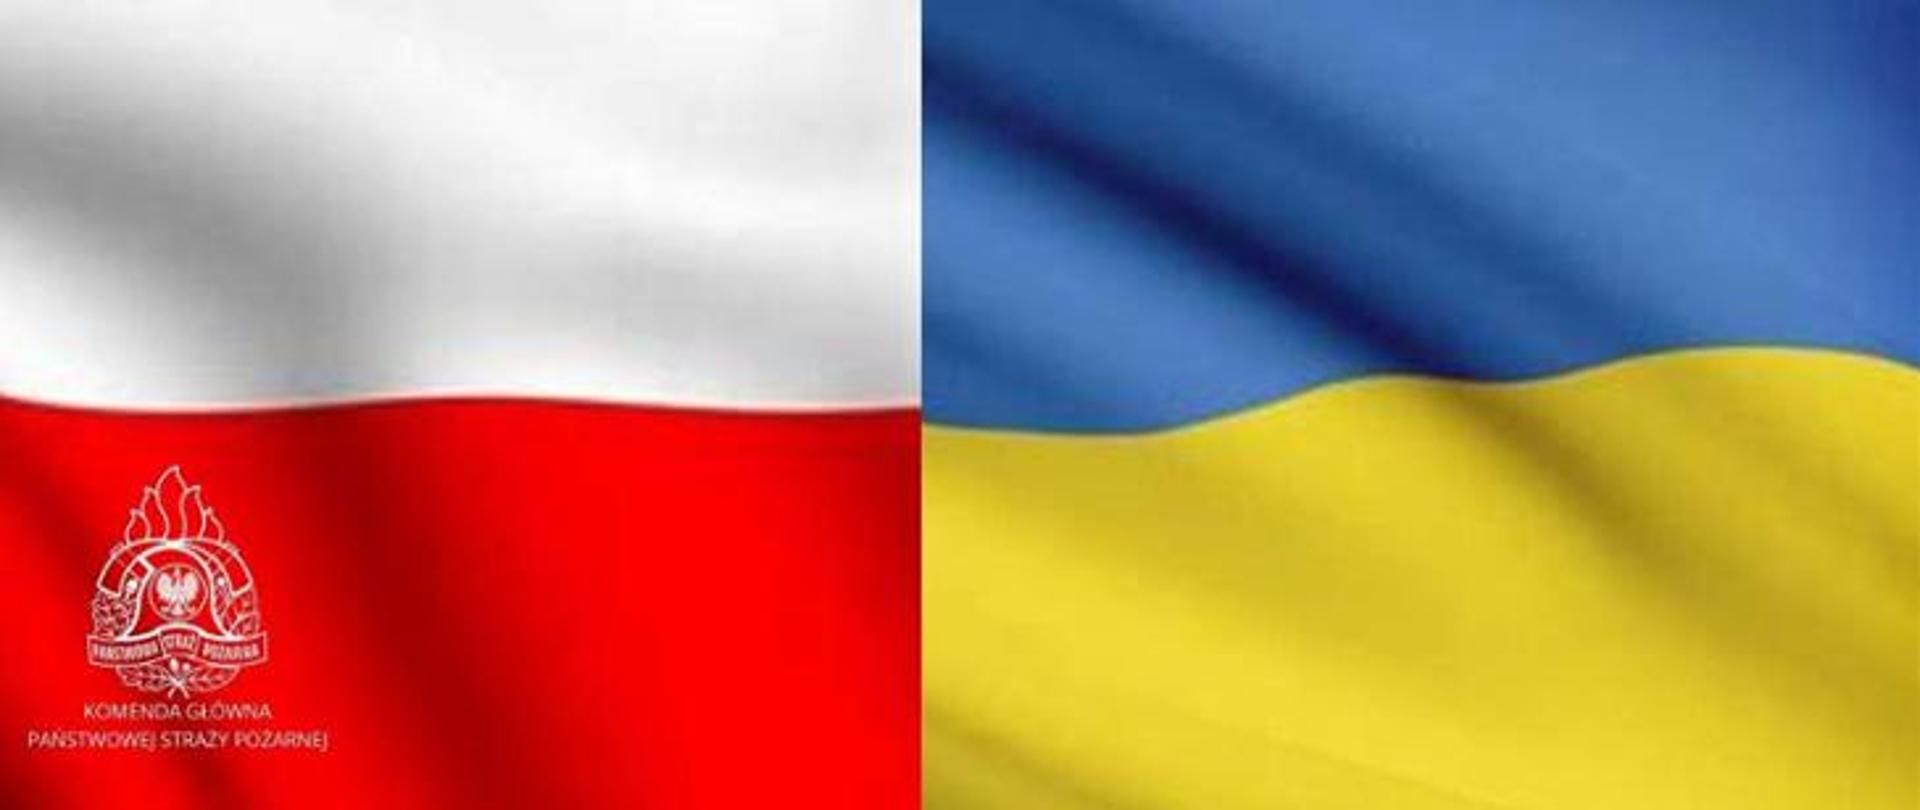 z lewej strony flaga Polski, z prawej strony flaga Ukrainy, Na fladze Polski logo PSP i napis Komenda Główna Państwowej Straży Pożarnej